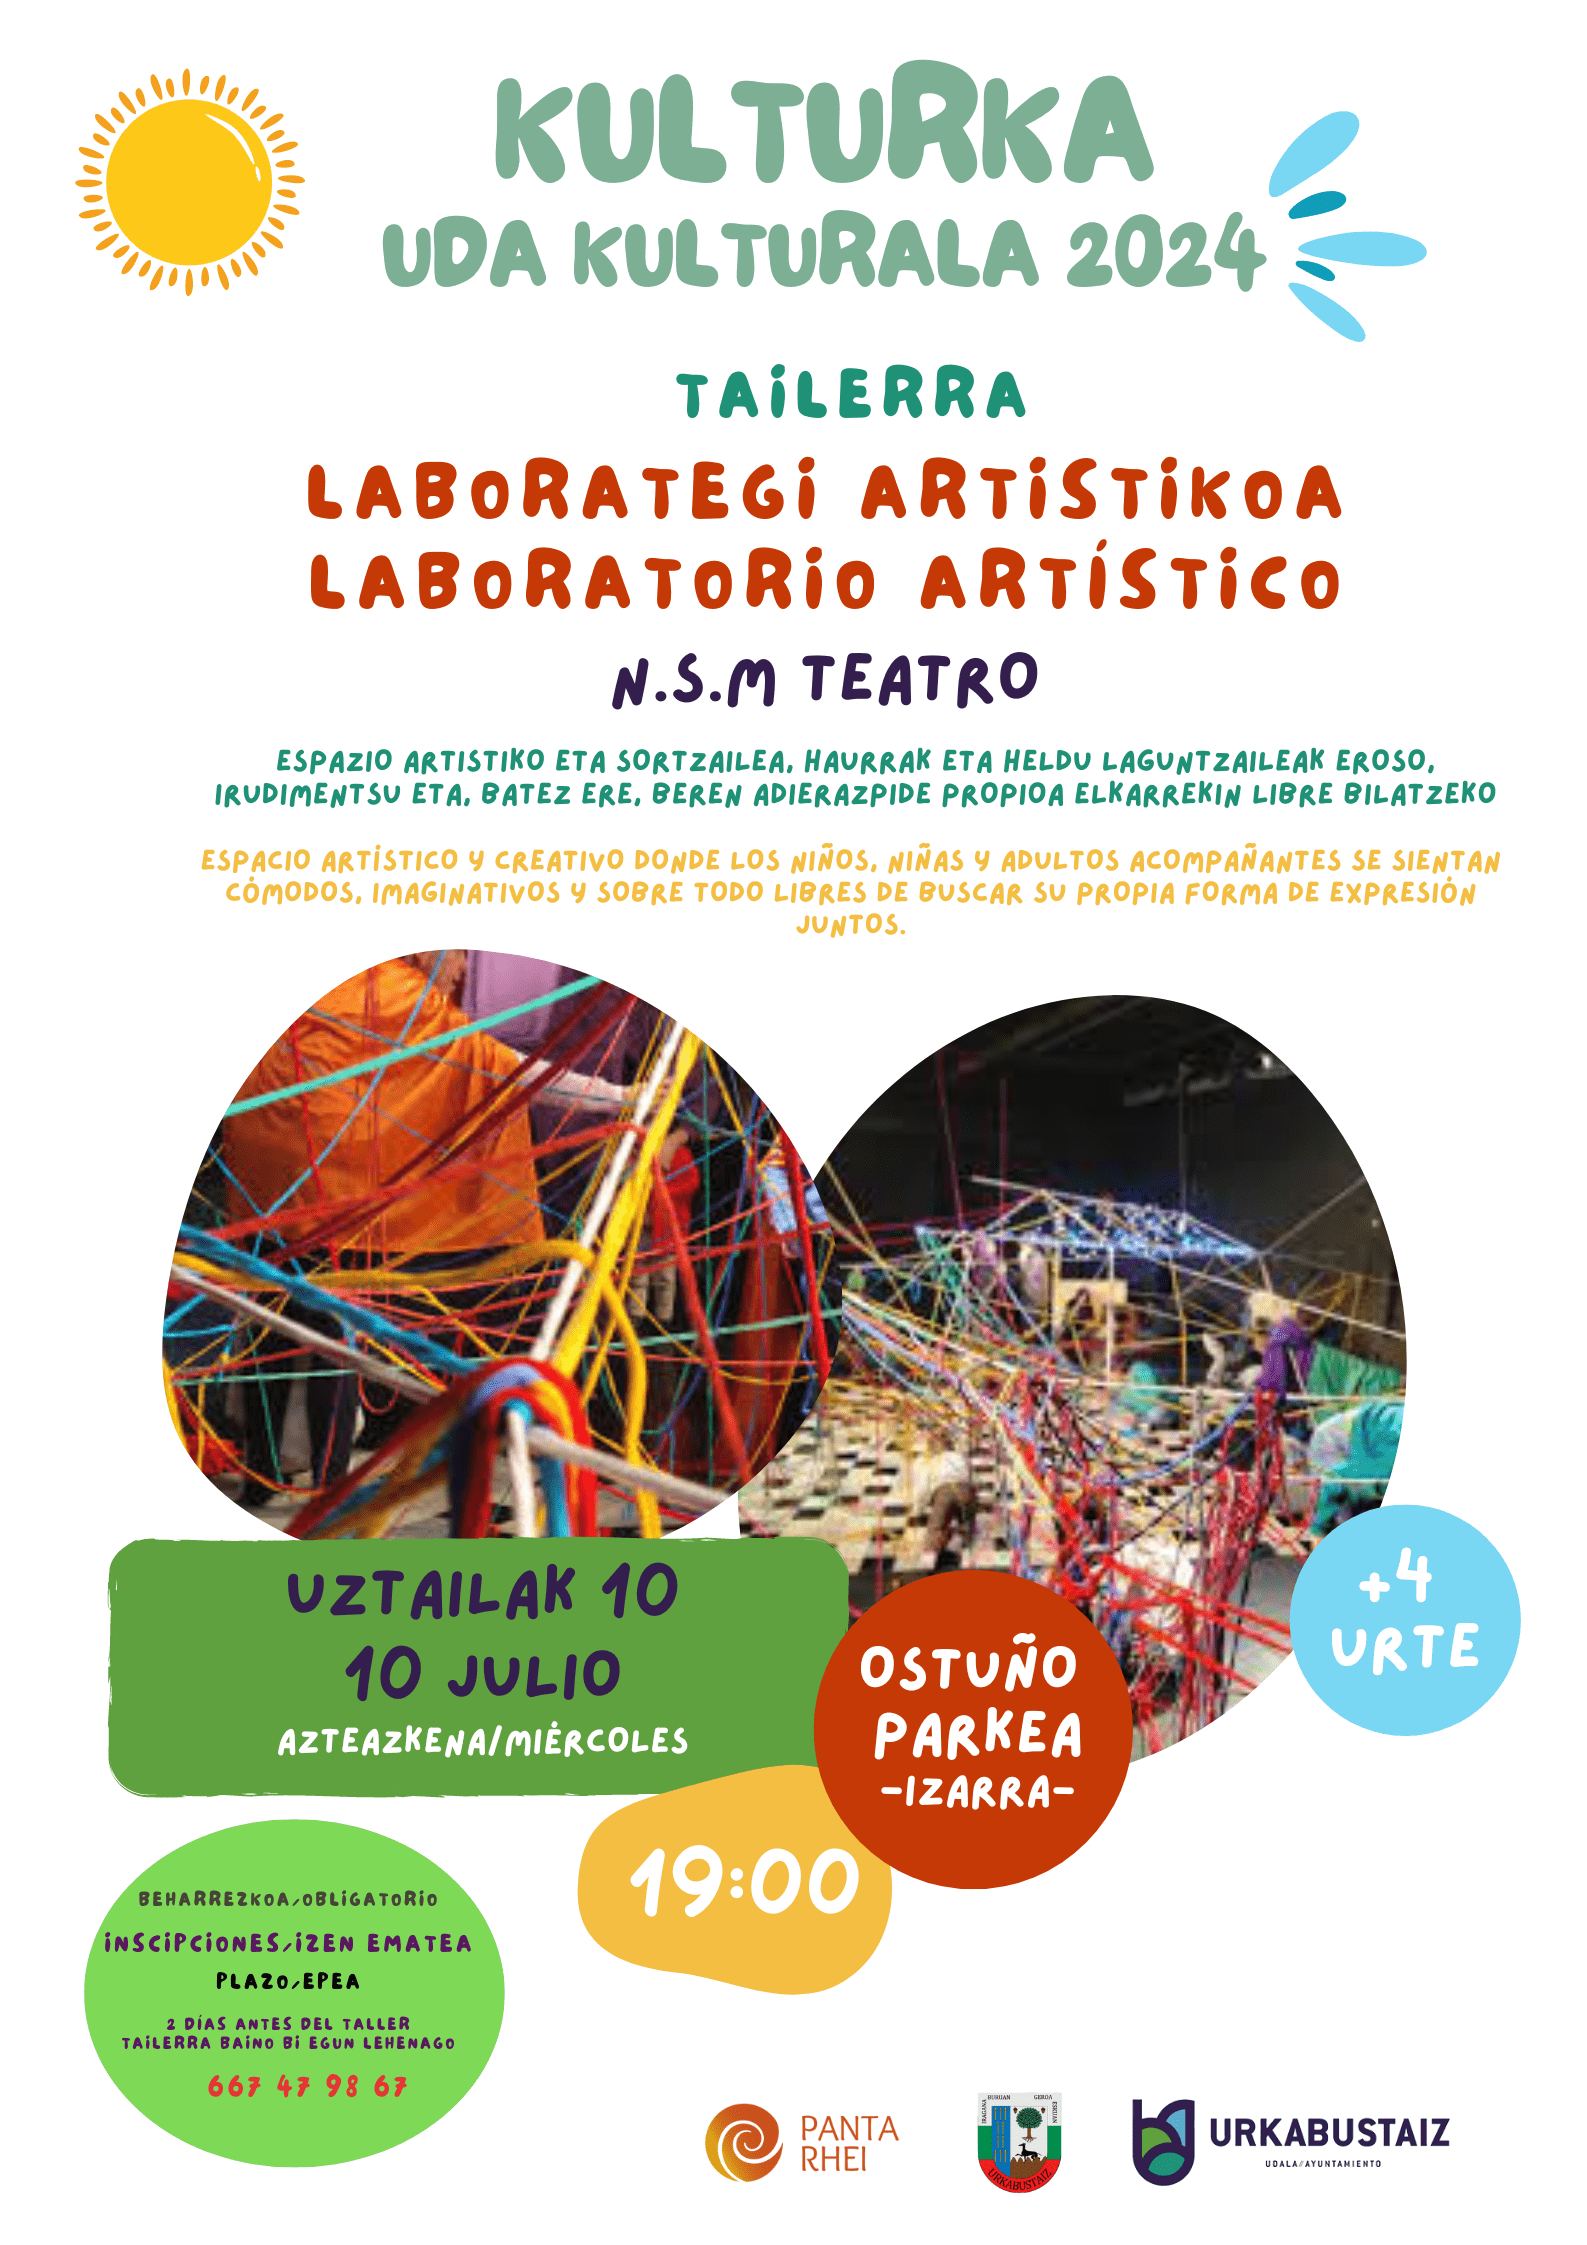 [:es]Laboratorio artístico para mayores de 4 años[:eu]4 urtetik gorakoendako laborategi artistikoa[:] @ Ostuño parkea.